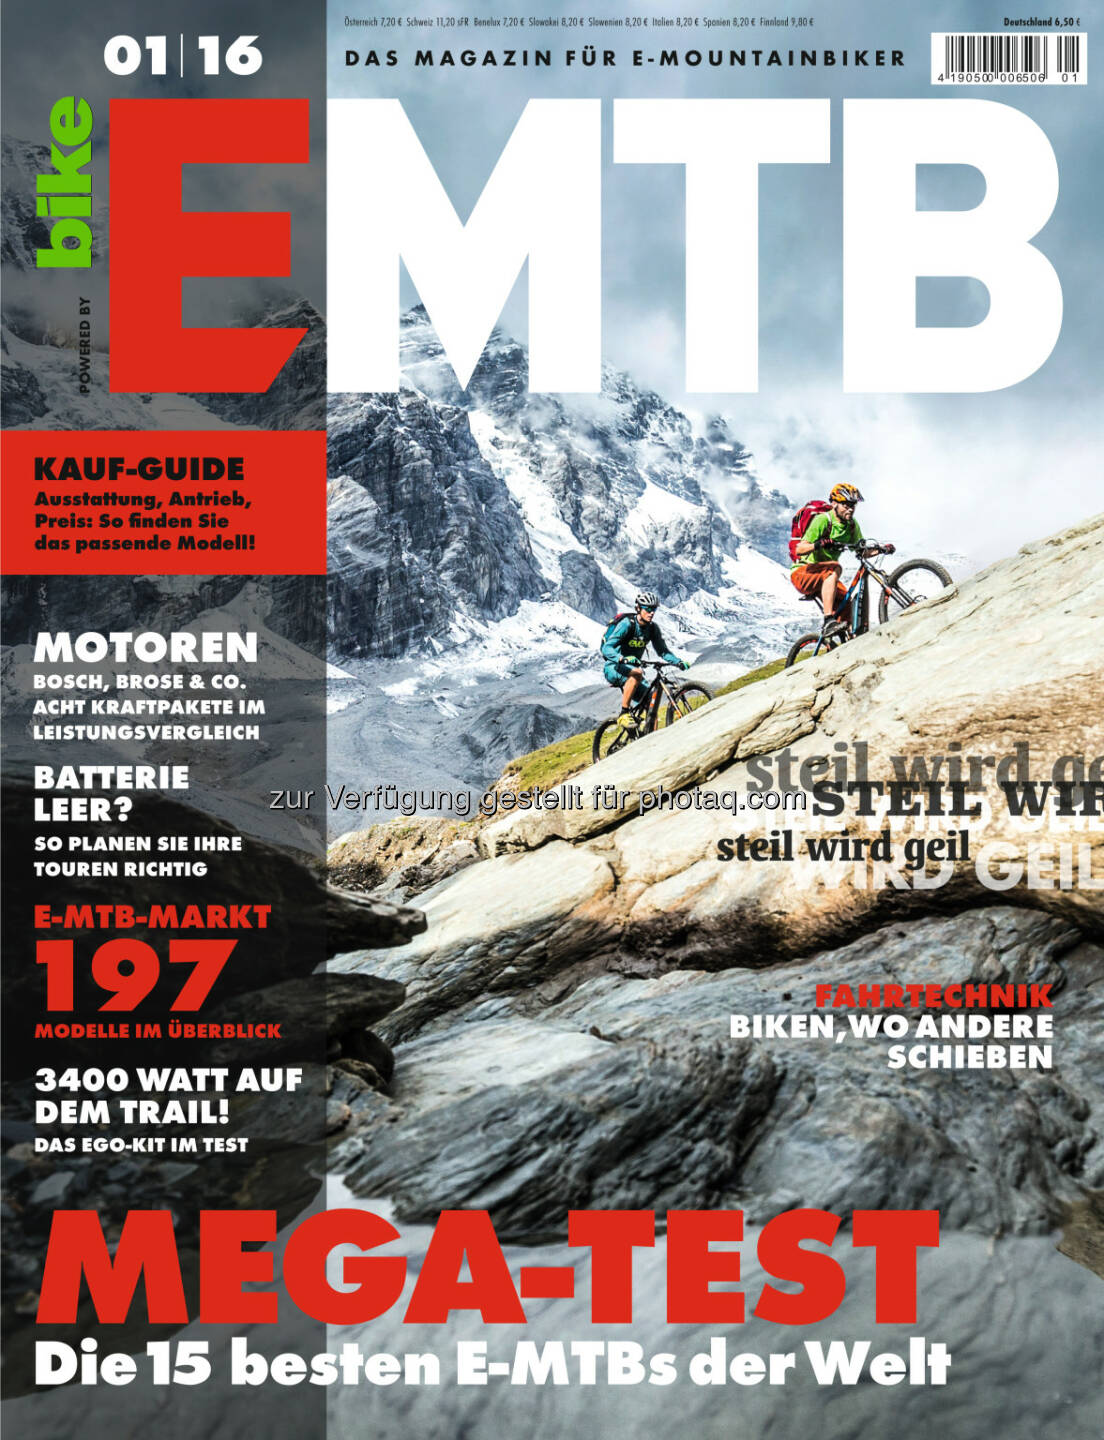 Premieren-Ausgabe der Zeitschrift EMTB : Schneller, höher, weiter : Die Premieren-Ausgabe der Zeitschrift EMTB liefert eine Vielzahl von Gründen, aufs E-Mountainbike zu steigen : Fotocredit: obs/Delius Klasing Verlag GmbH/Markus Greber